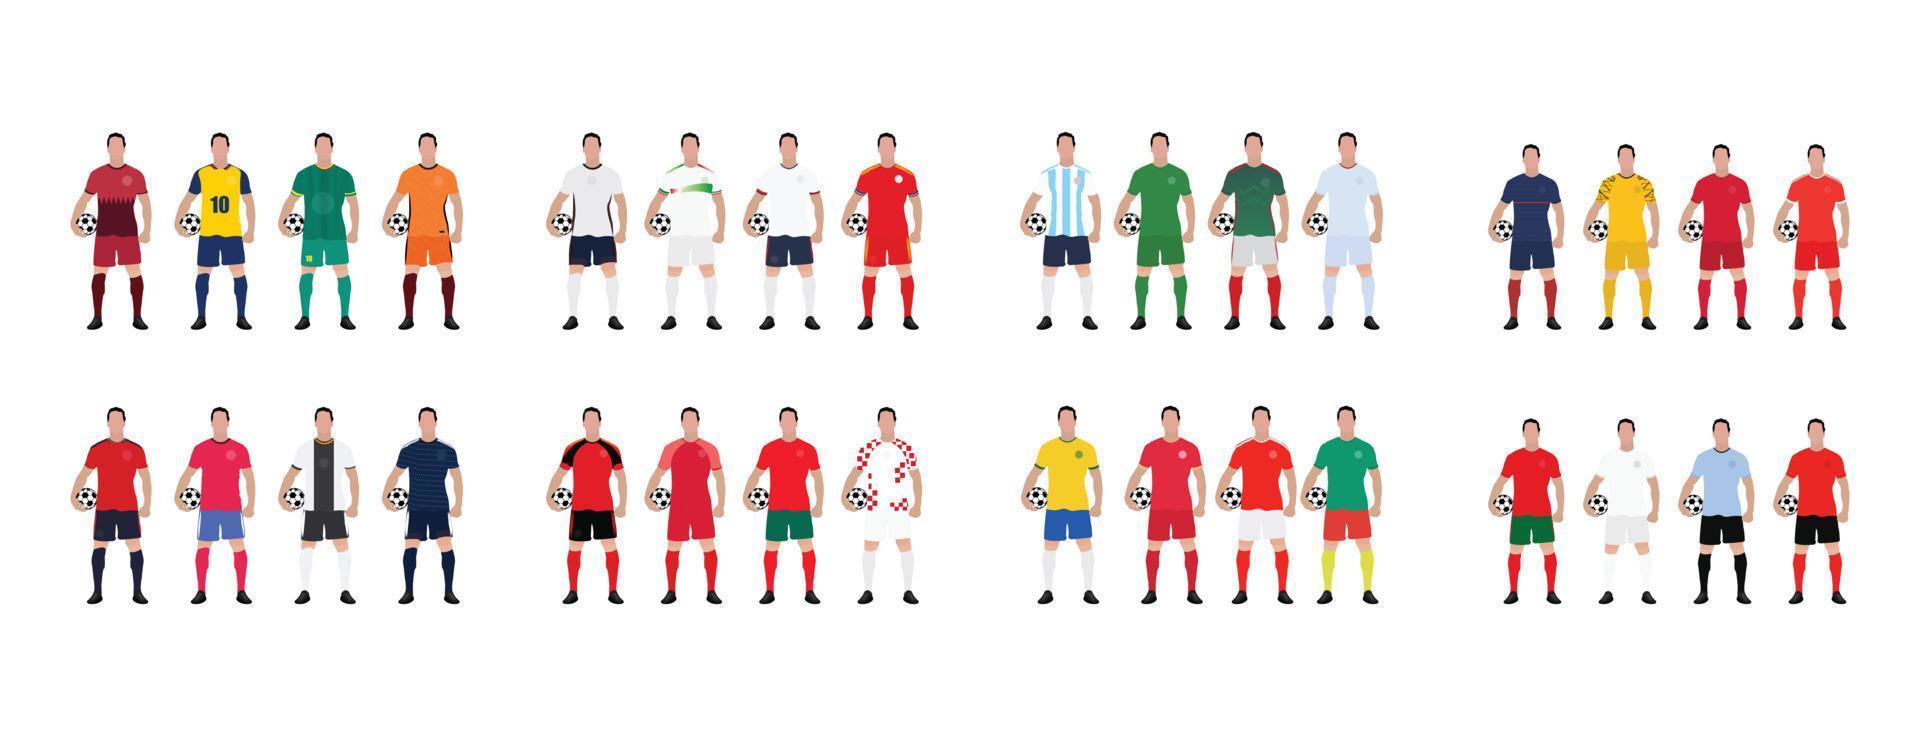 campeonato mundial de futebol todas as equipes com seu kit de equipe vetor